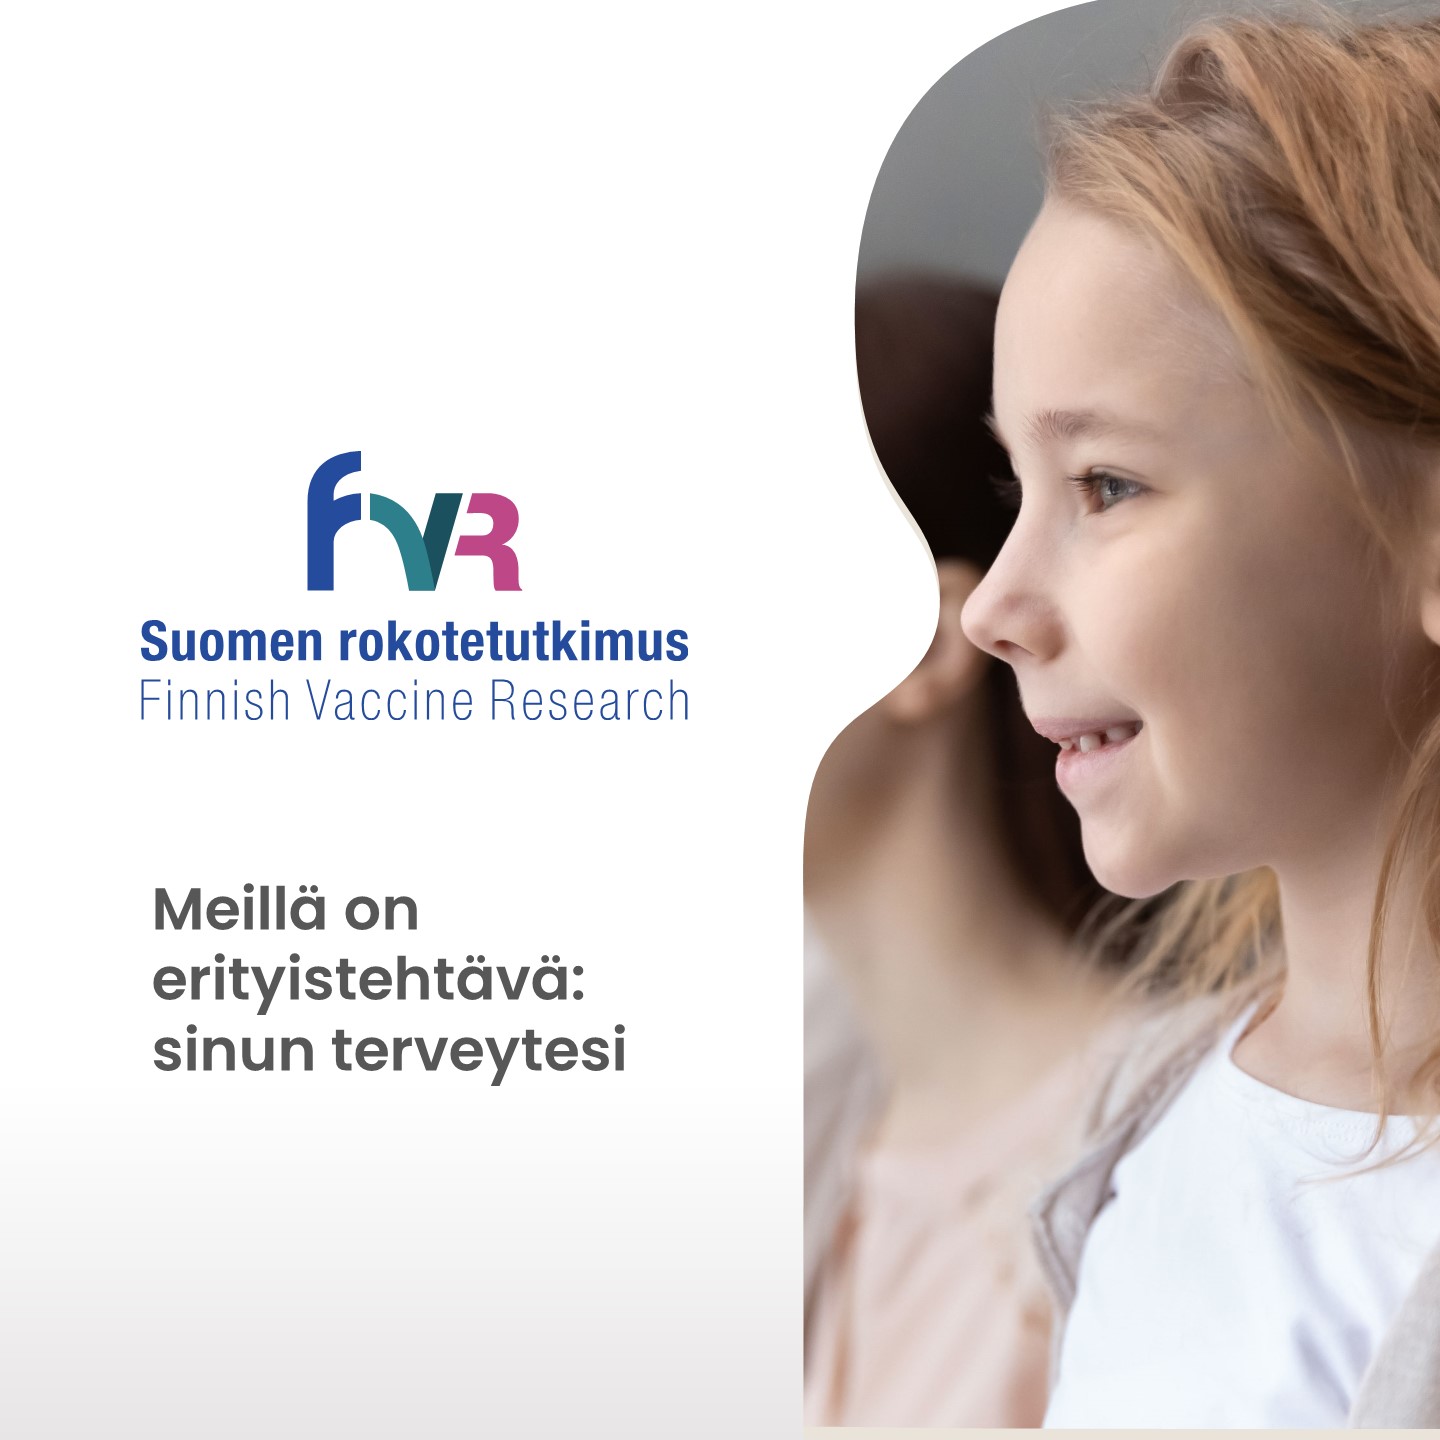 Images FVR, Seinäjoen rokotetutkimusklinikka